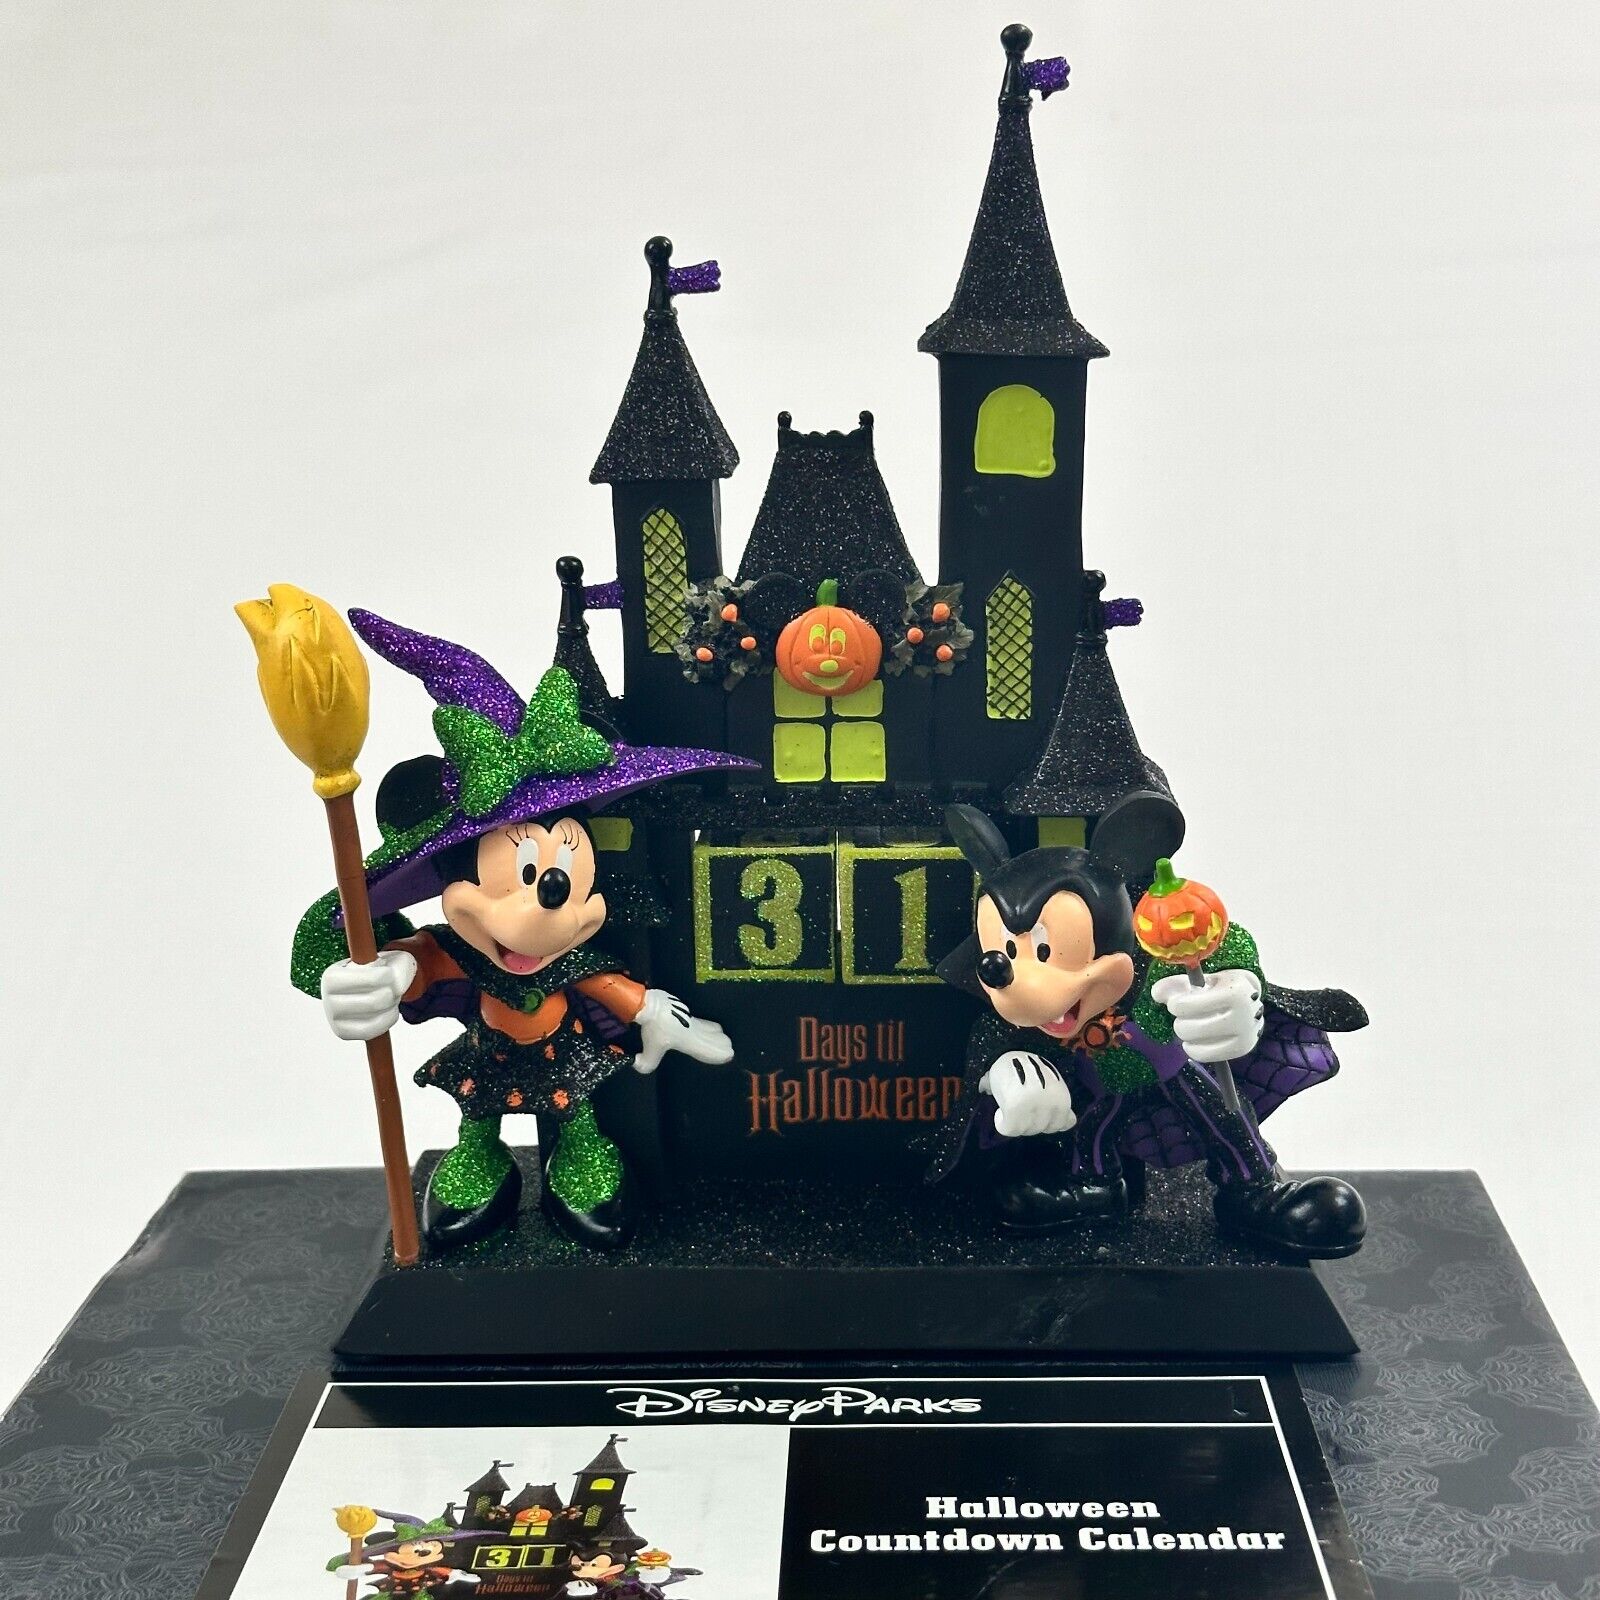 Disney Parks Halloween Countdown Calendar Dracula Mickey Witch Minnie Figurine